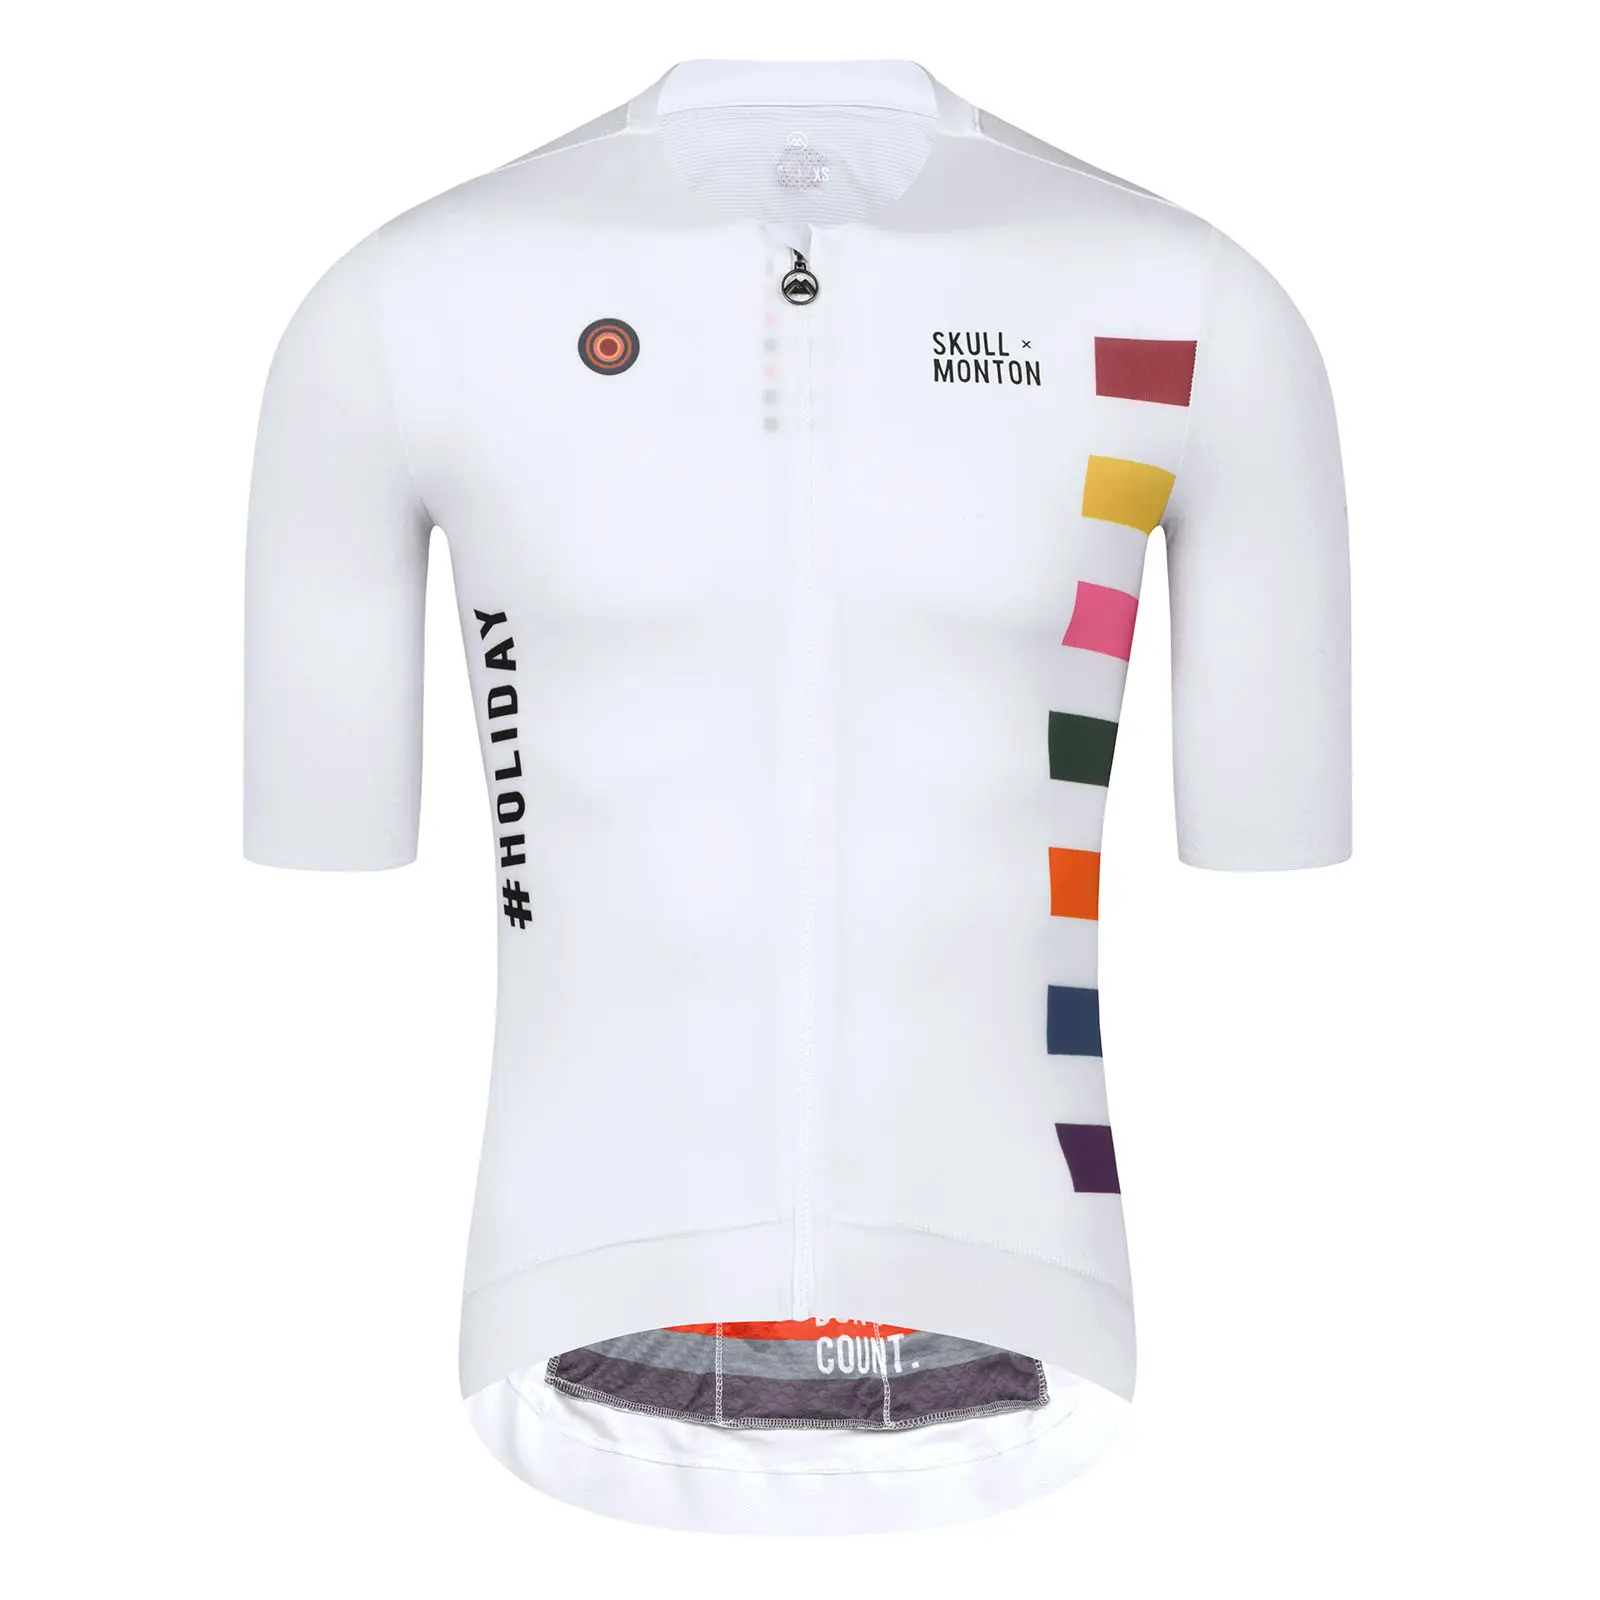 Monton OEM personnalisé Pro équipe vélo de route maillot cyclisme vêtements hauts maillots cyclisme vêtements cyclisme maillot personnalisé cyclisme maillot